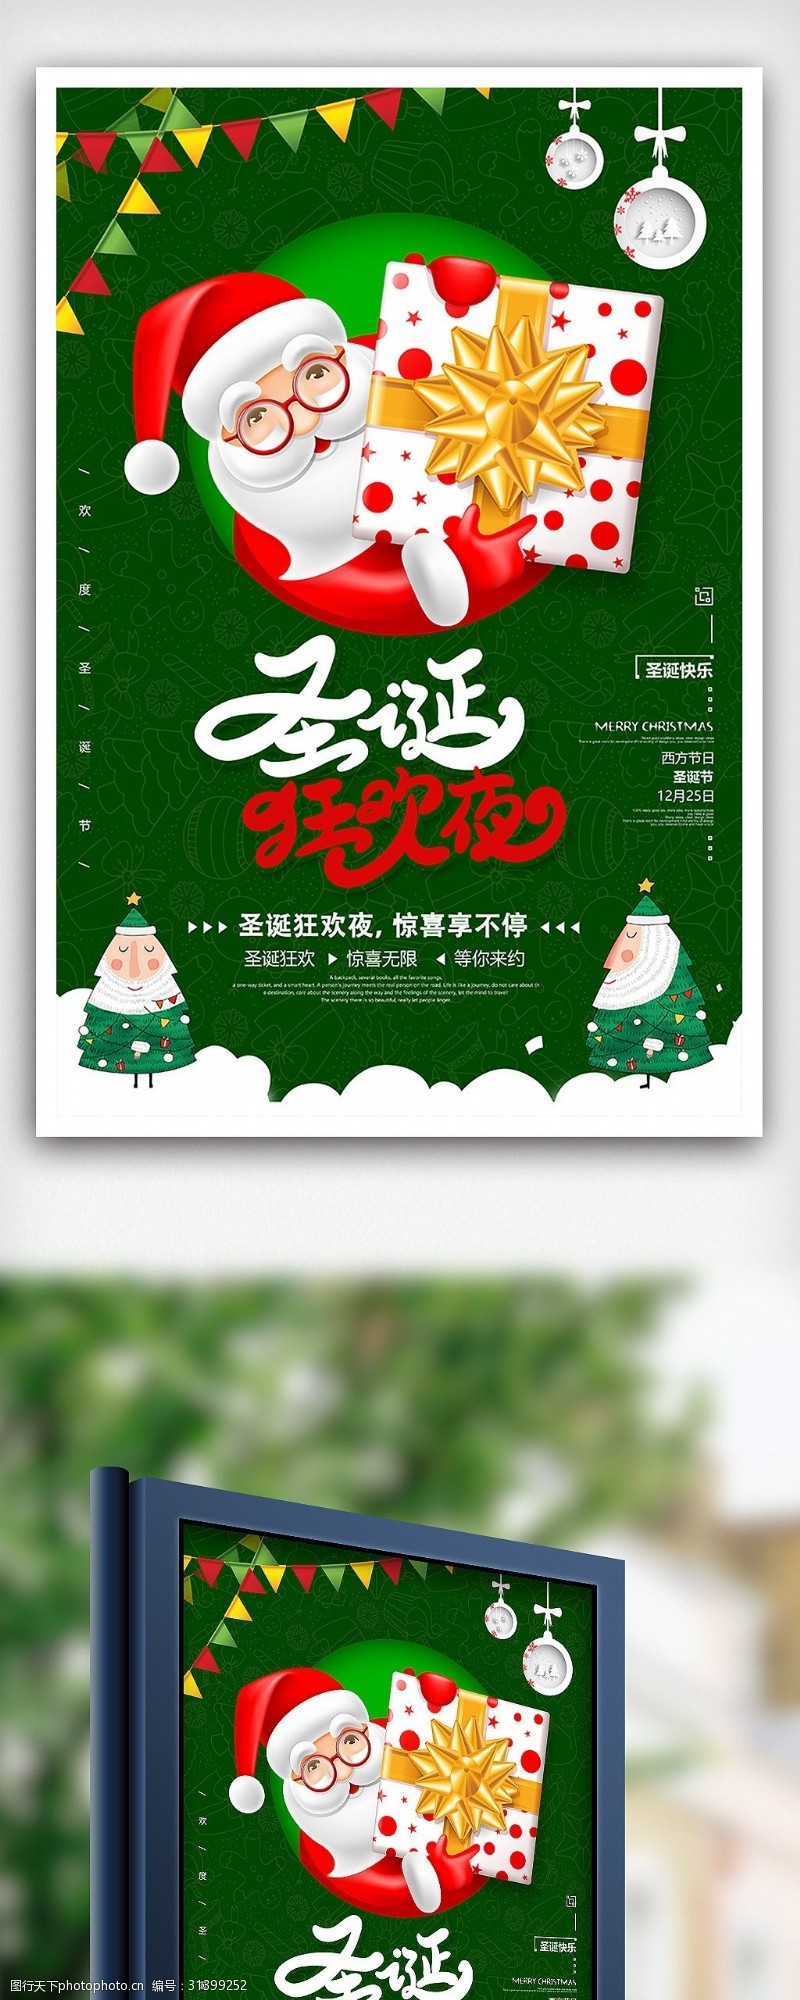 圣诞模板下载时尚圣诞节送豪礼促销海报